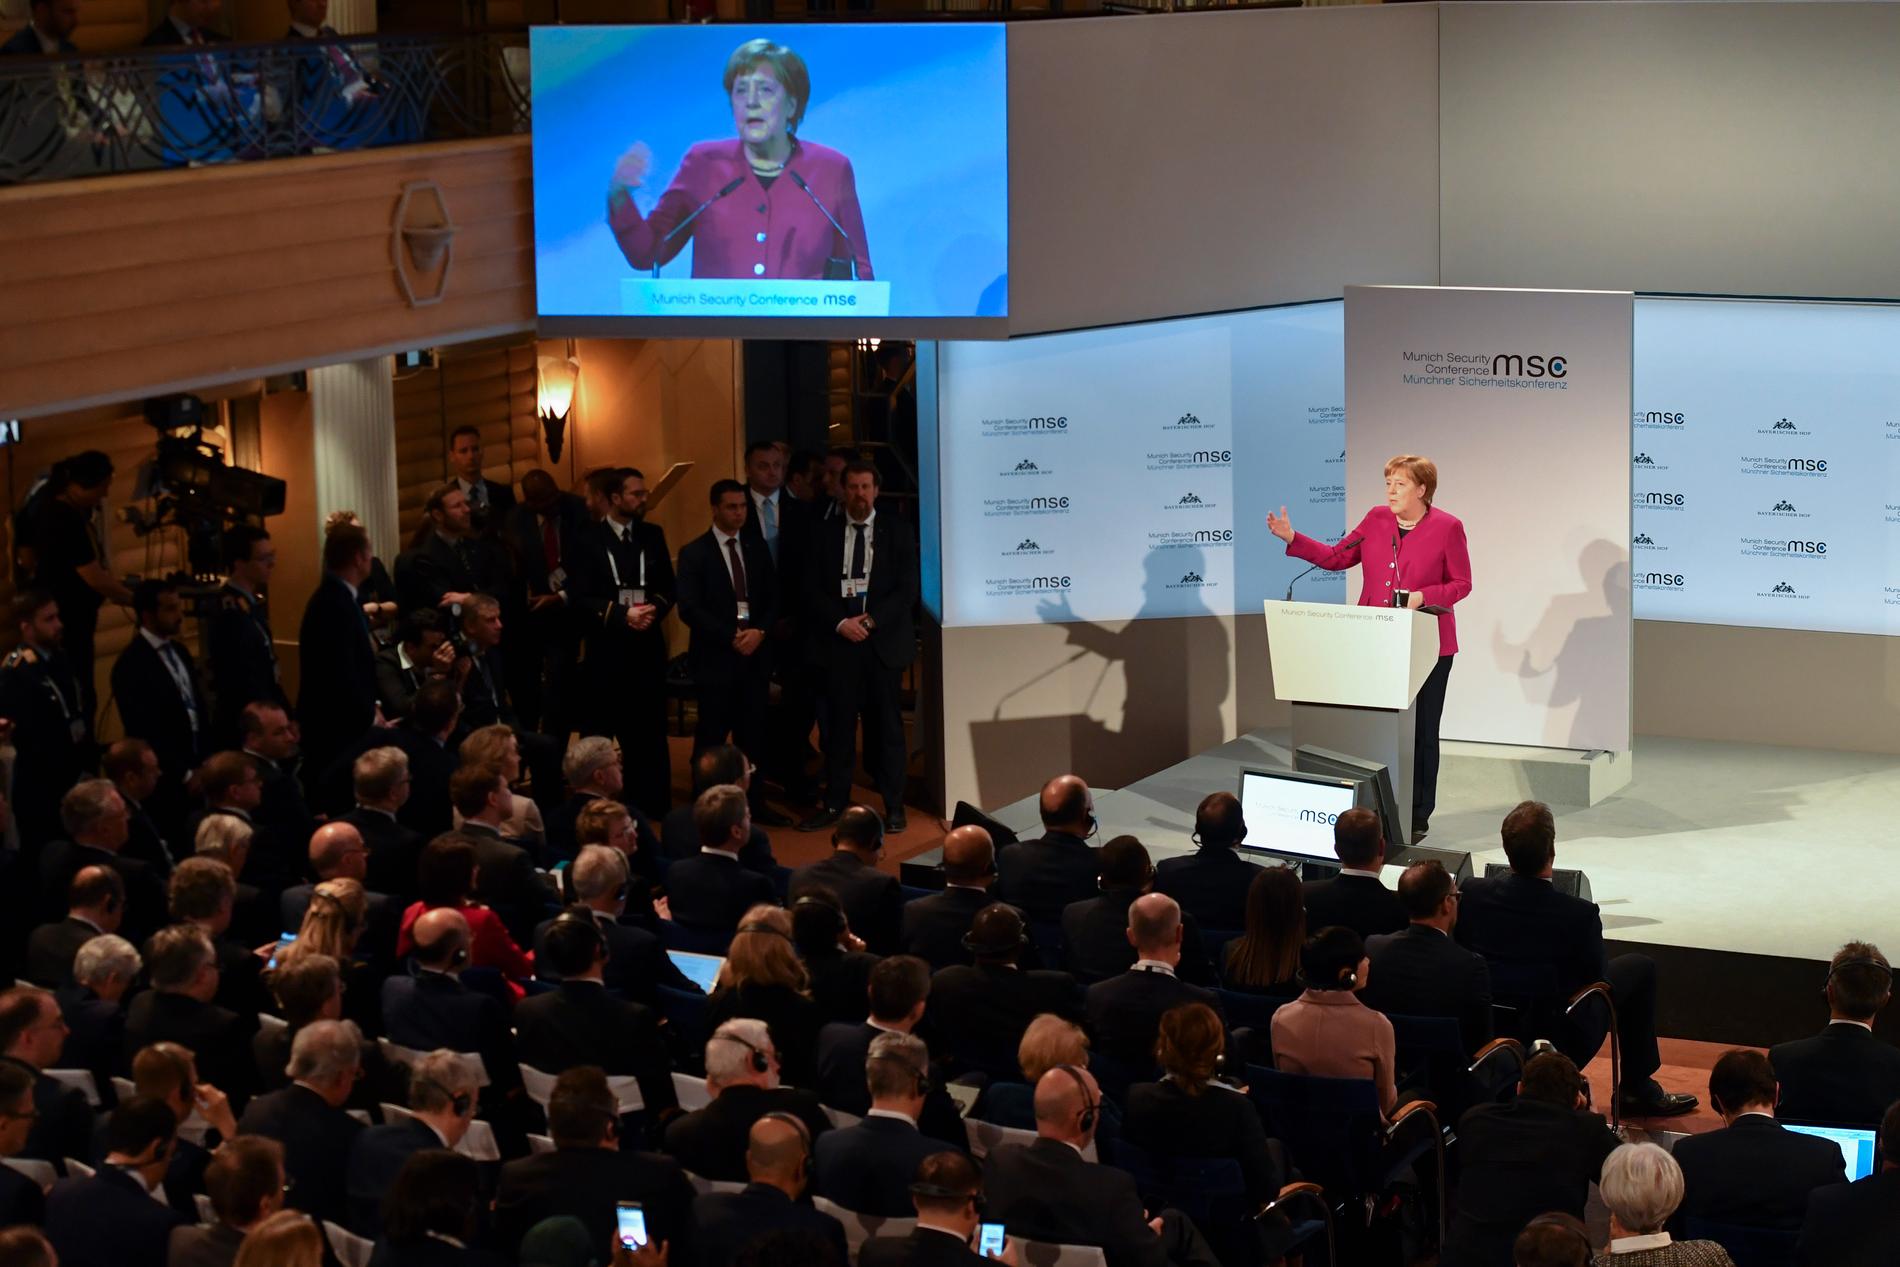 Tysklands förbundskansler Angela Merkel betonade globalt samarbete i sitt tal vid säkerhetskonferensen i München.